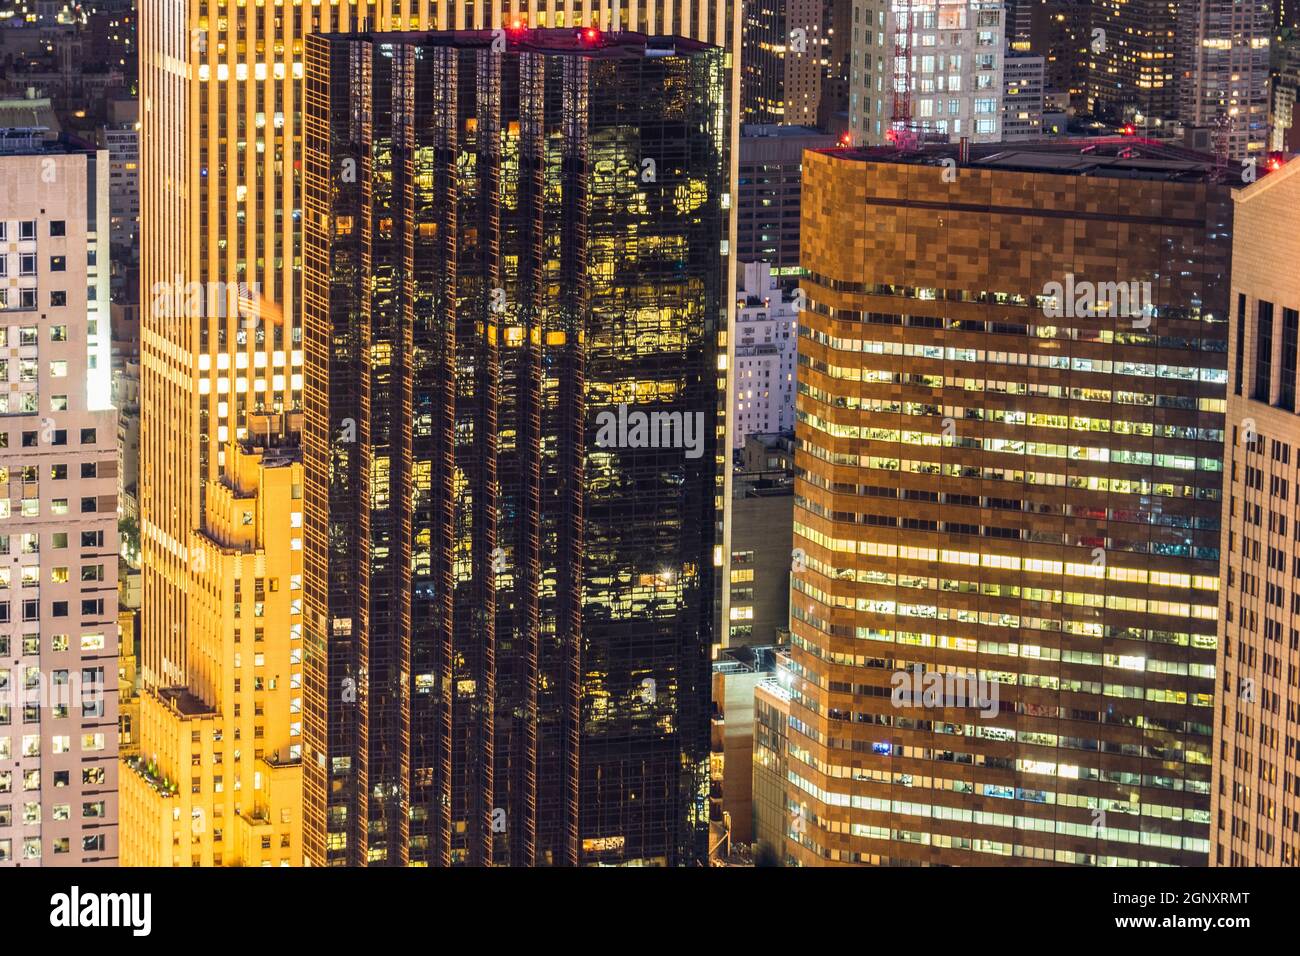 New York Manhattan night view. Shooting Location: New York, Manhattan Stock Photo